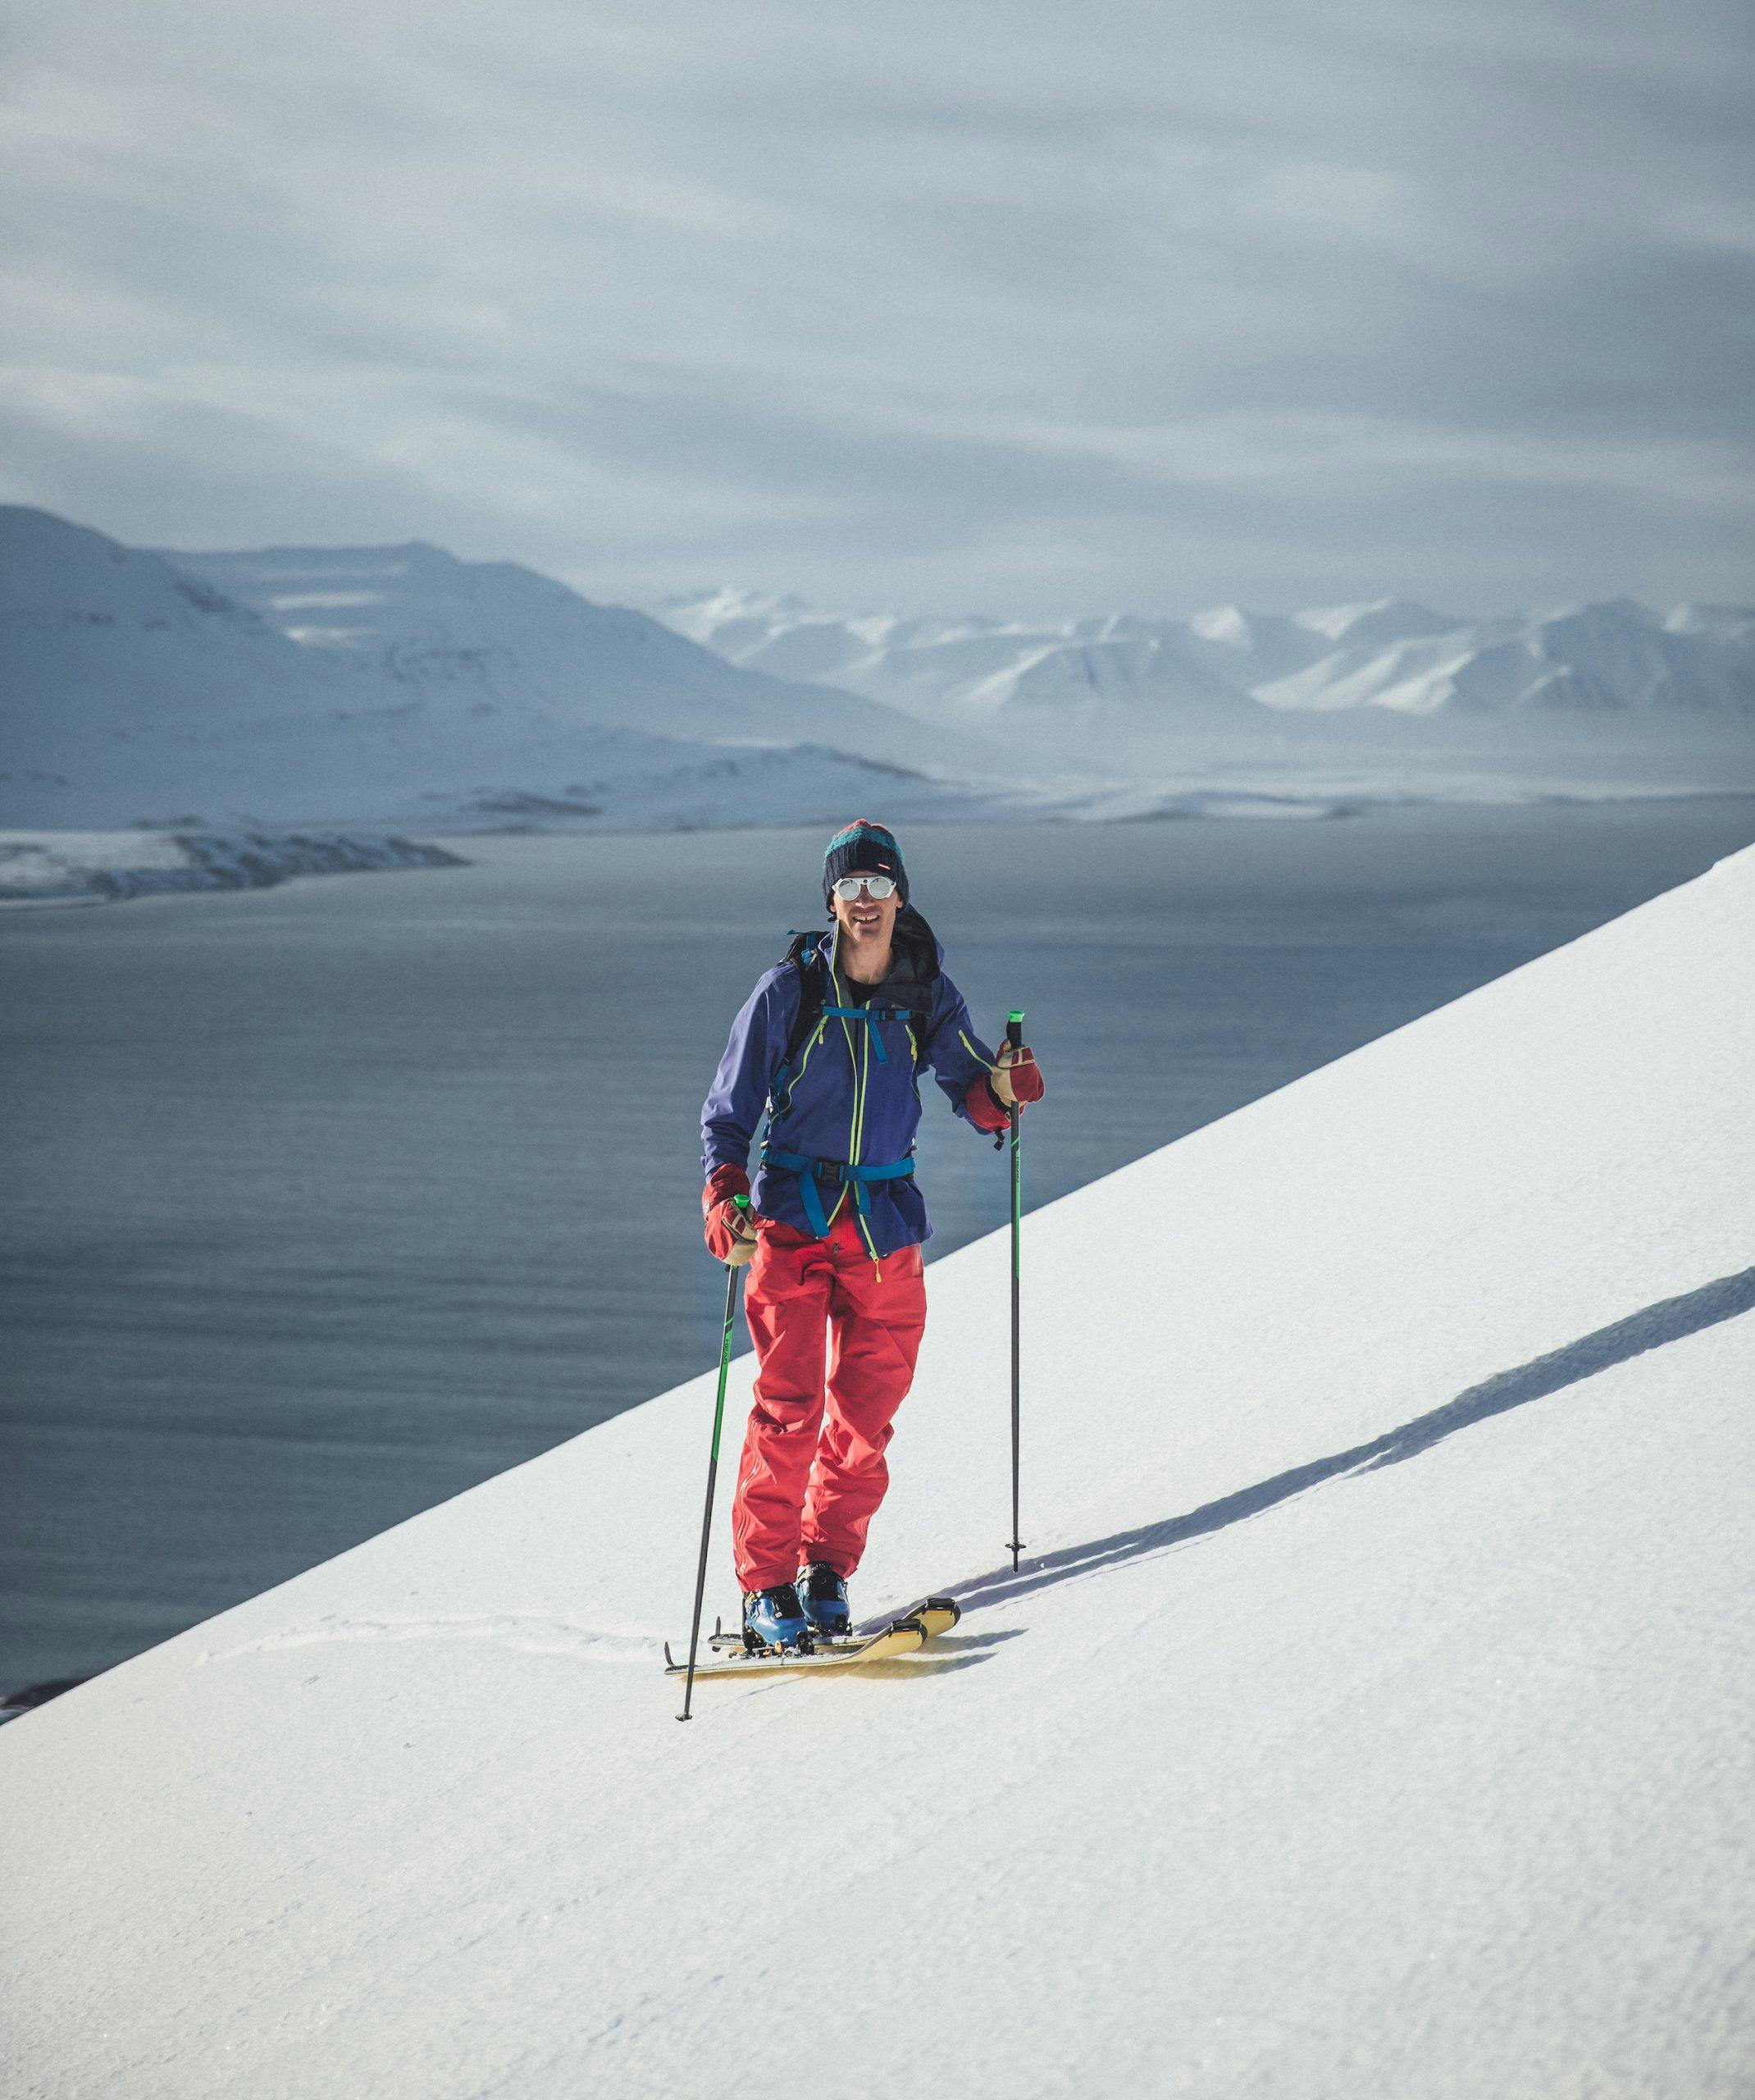 Leo alsved ski touring in Iceland